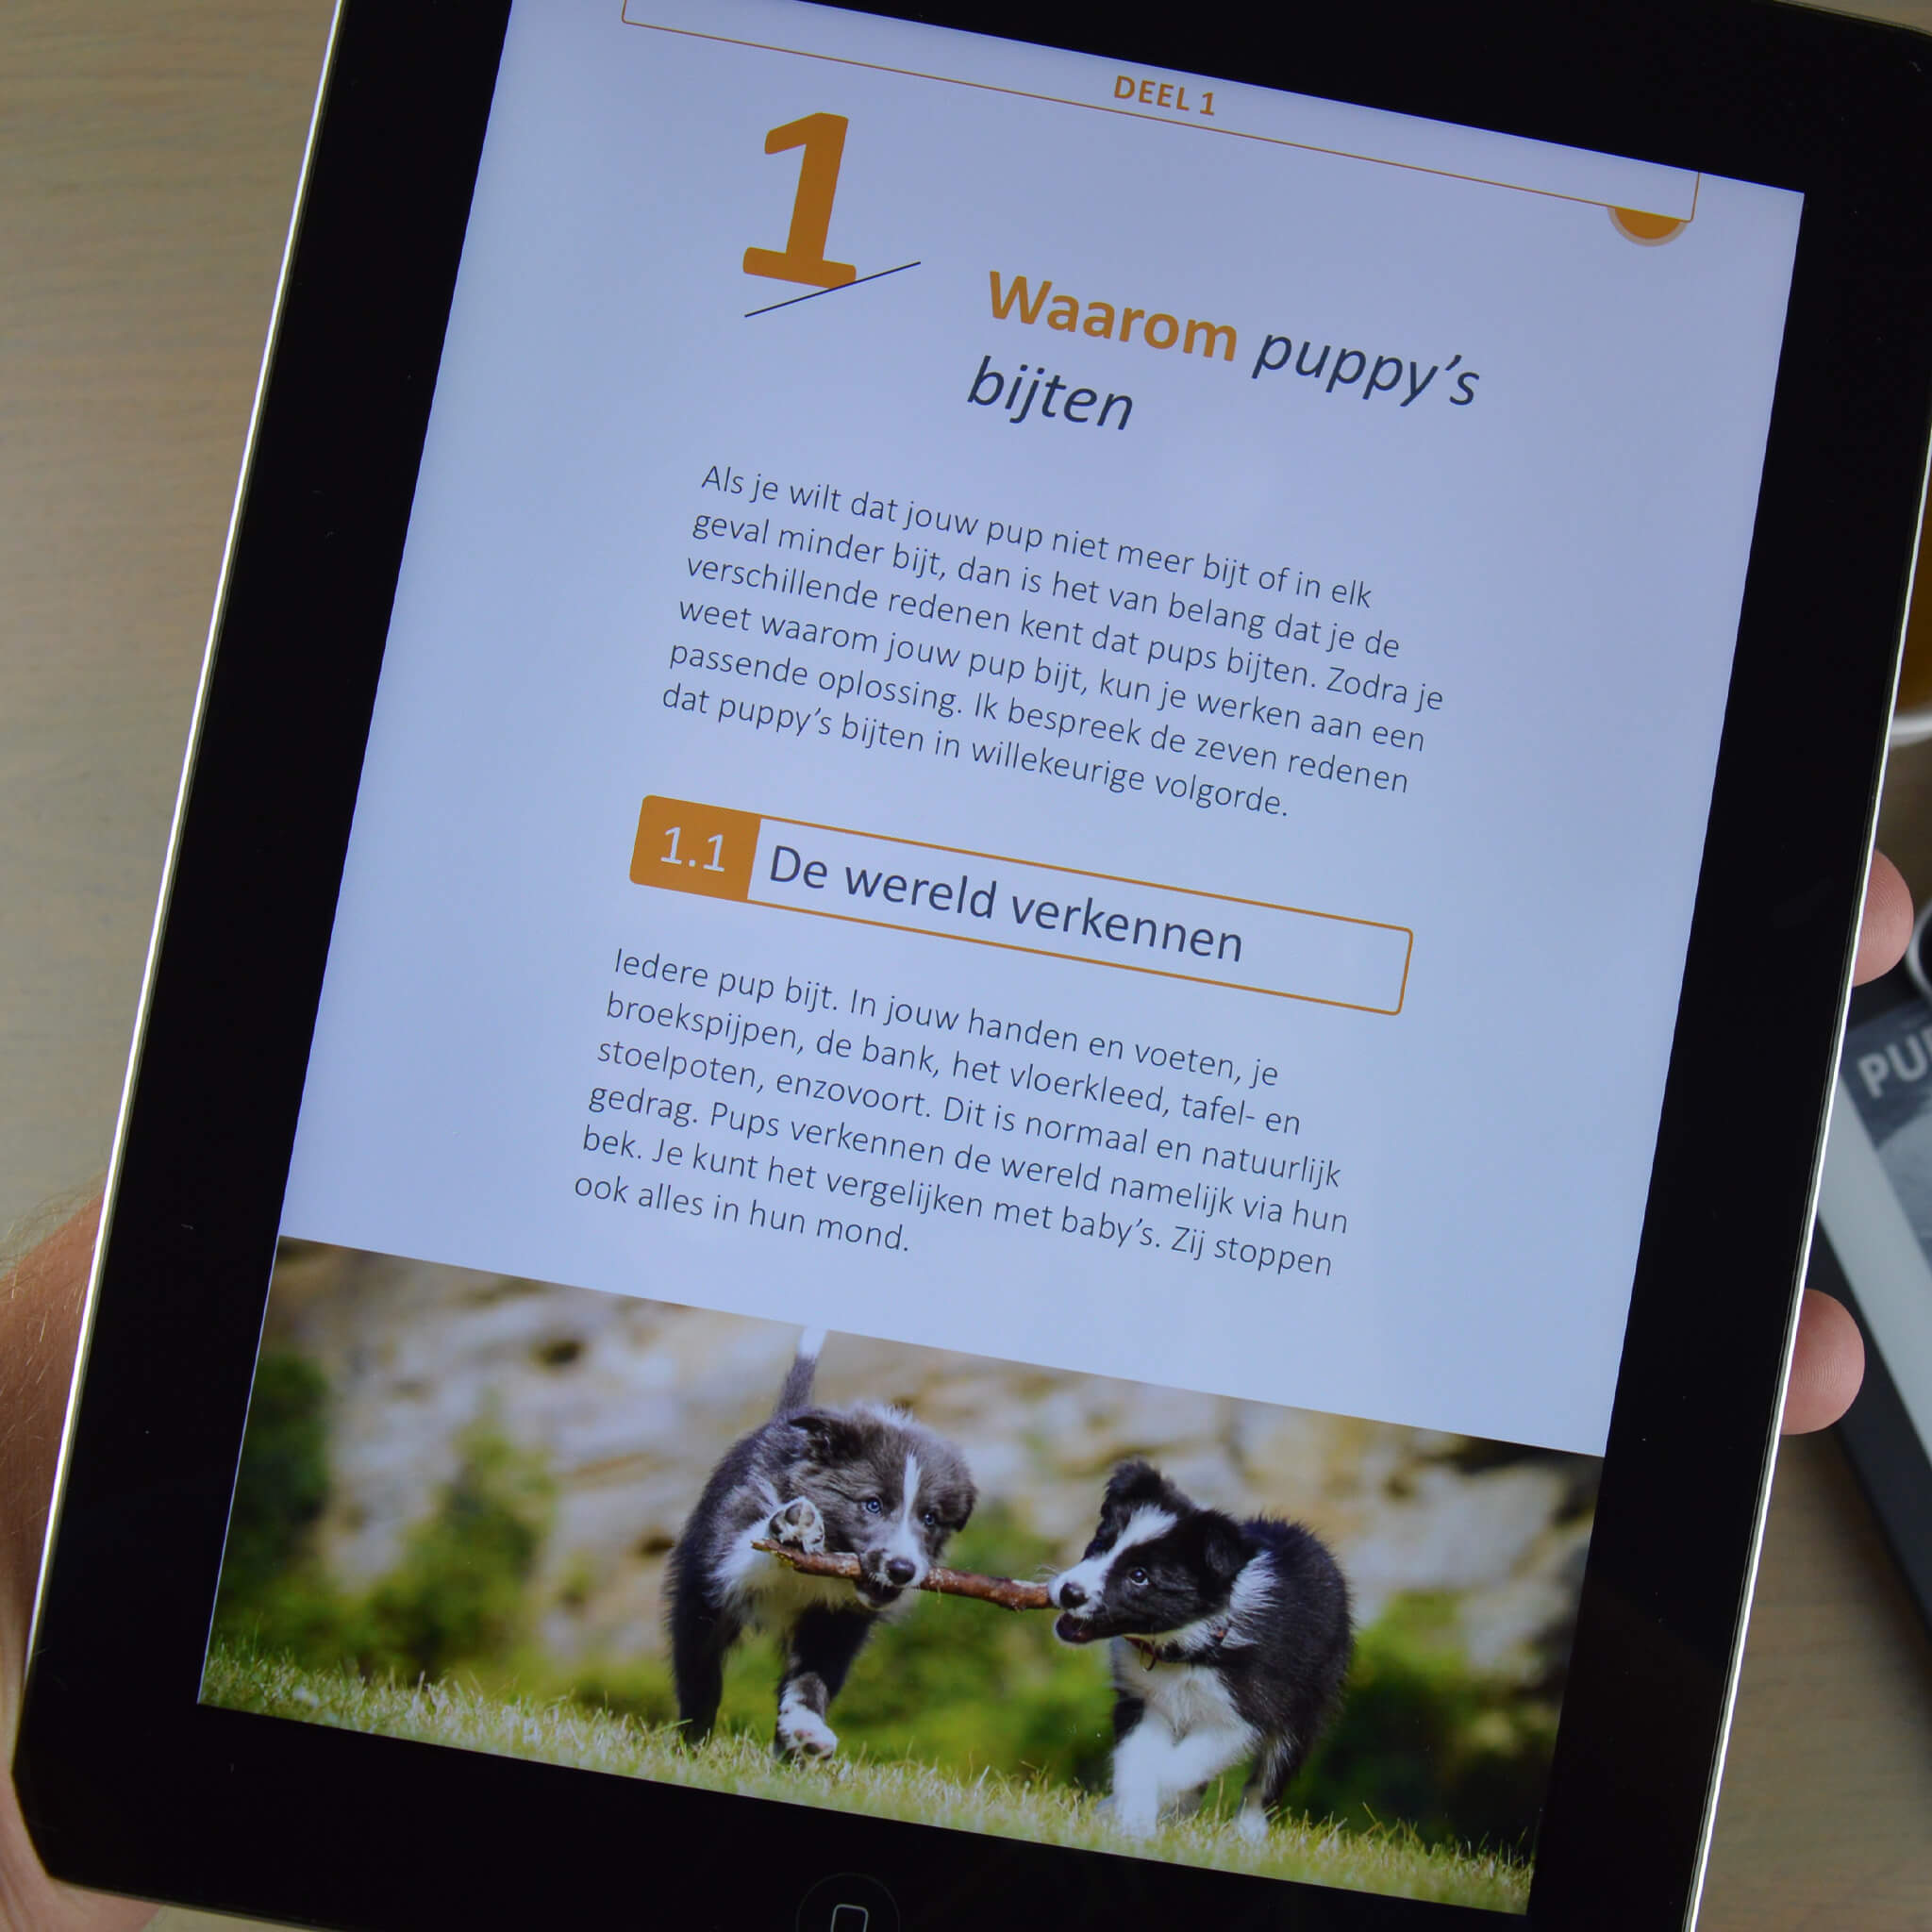 Het Ultieme Puppy Bijten Afleren Handboek (ebook)